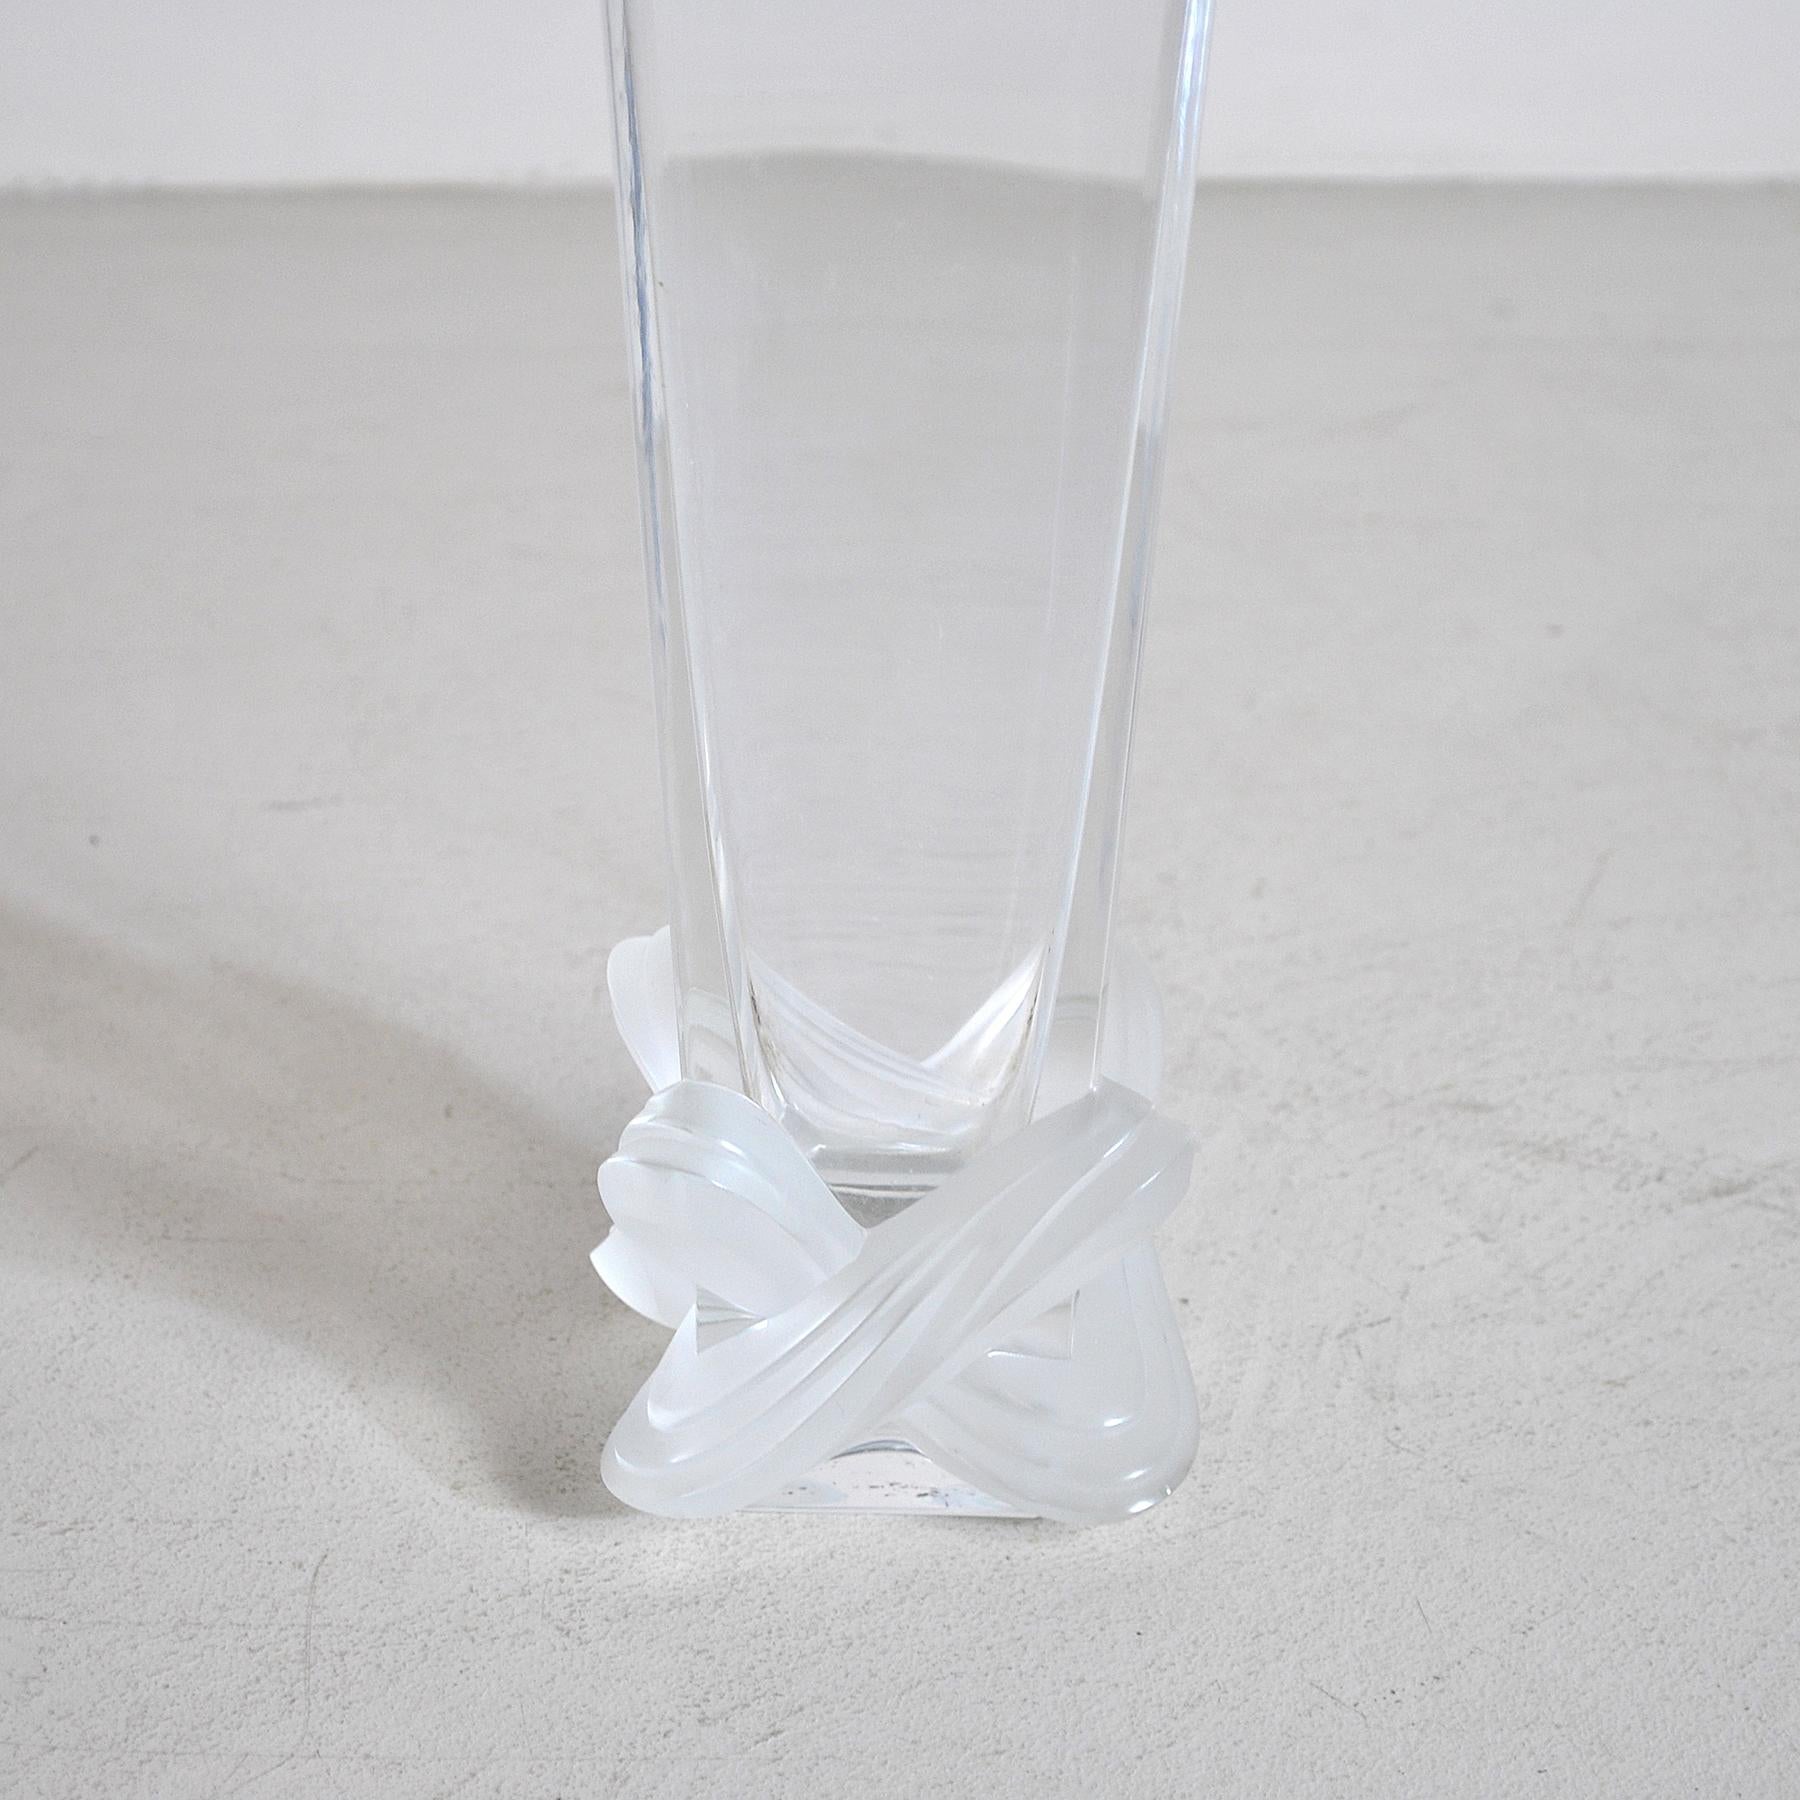 Vetro in cristallo modello Lucca produzione Lalique.
    